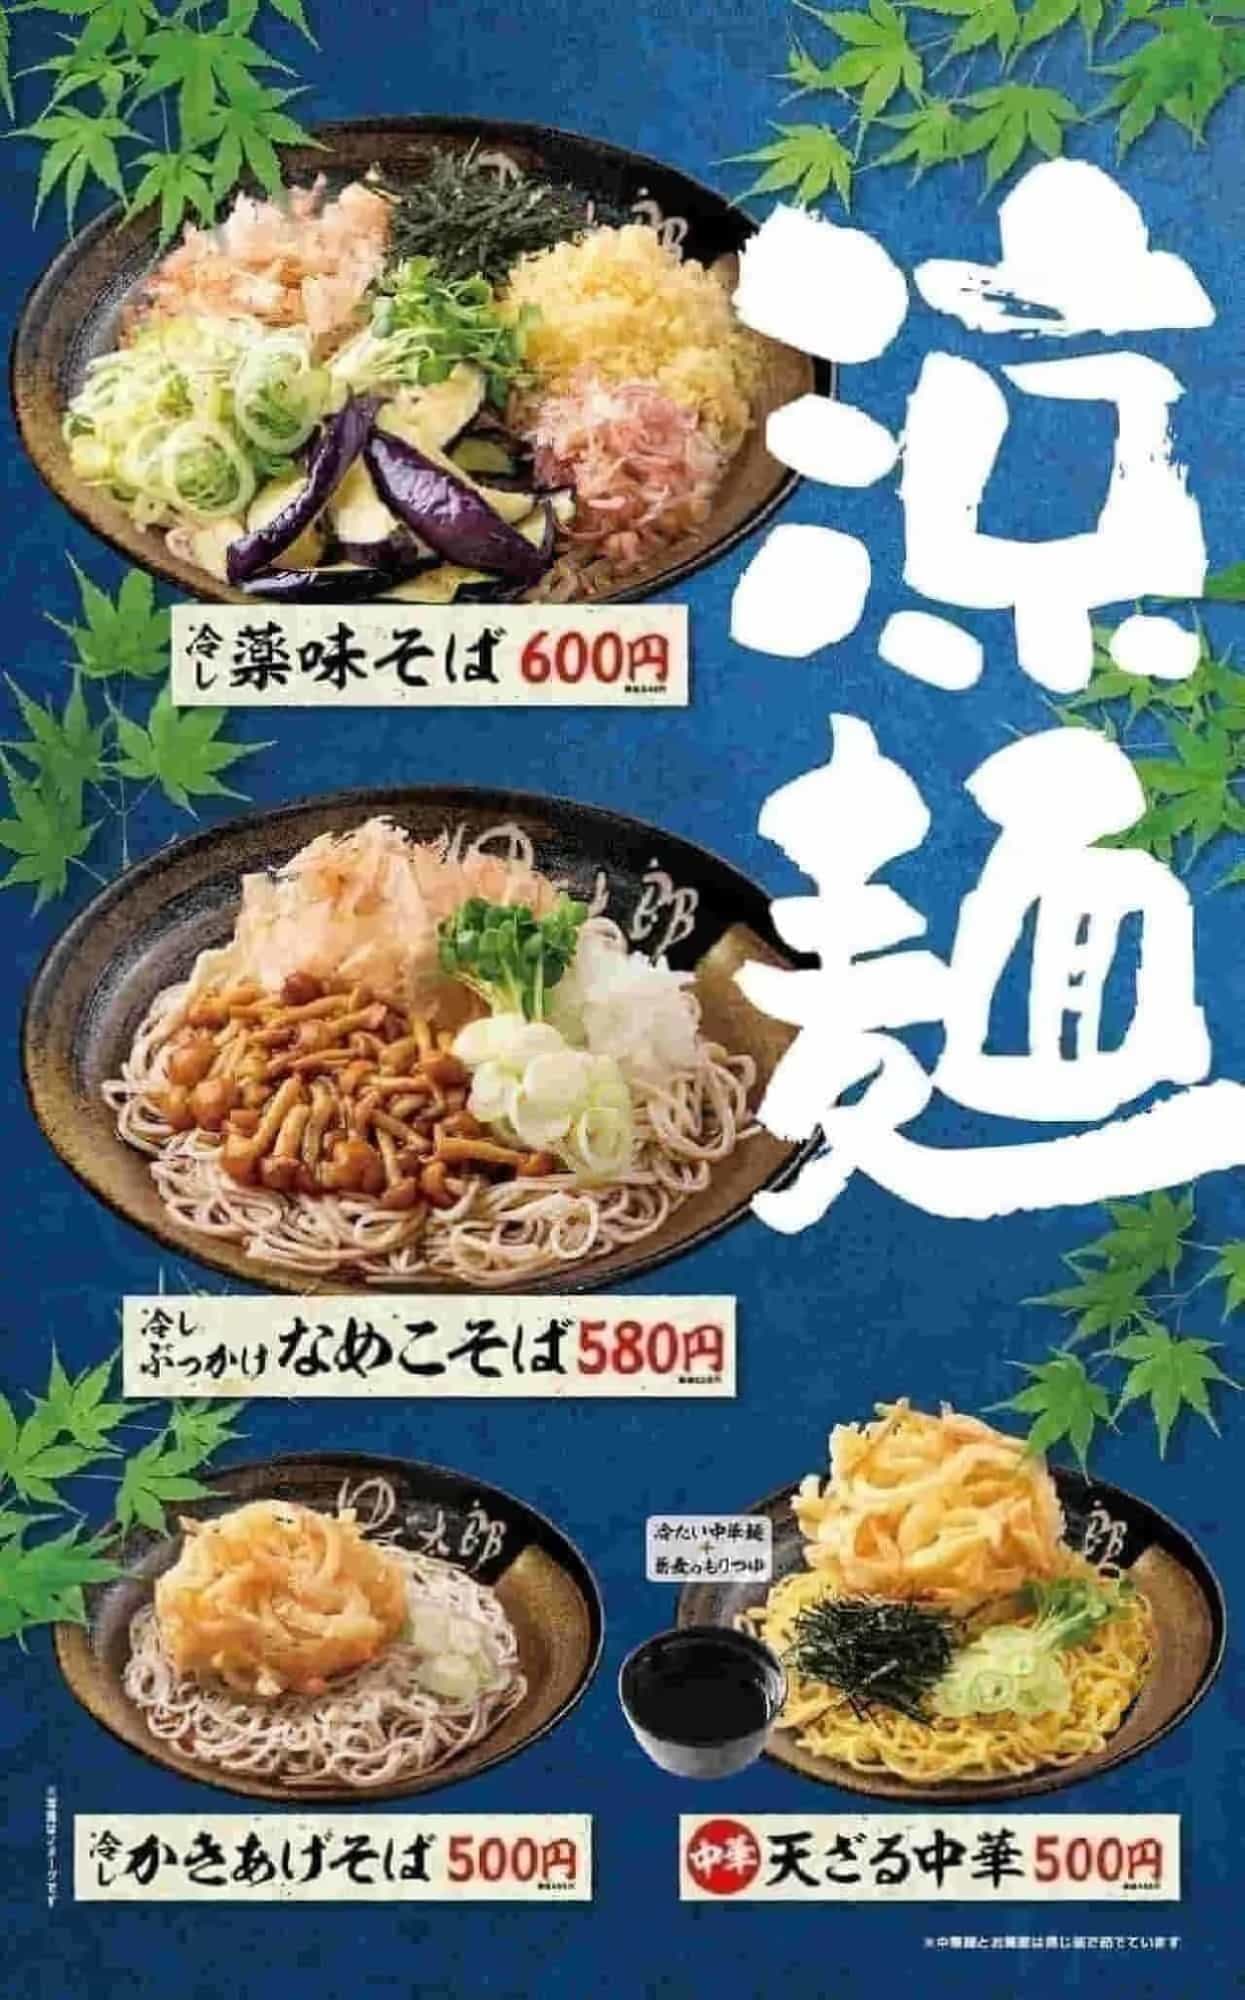 YUDETARO "Cold Yakumi Soba", "Cold Bukkake Nameko Soba", "Cold Kakiage Soba", "Tenzaru Chinese Soba".